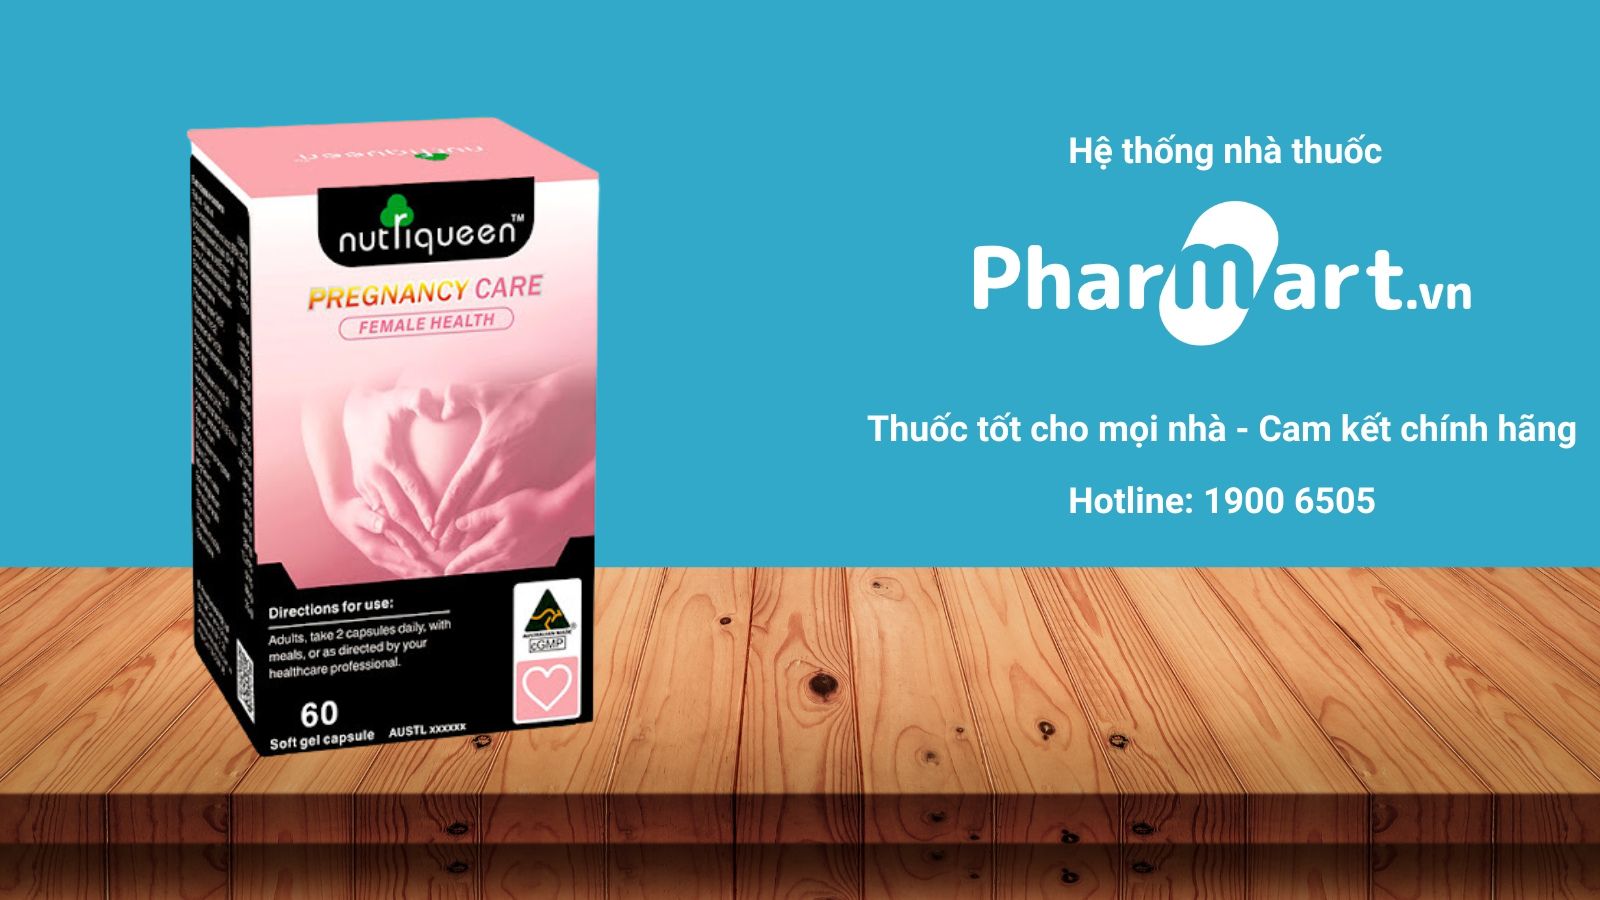 Mua Nutriqueen Pregnancy Care chính hãng tại Pharmart.vn